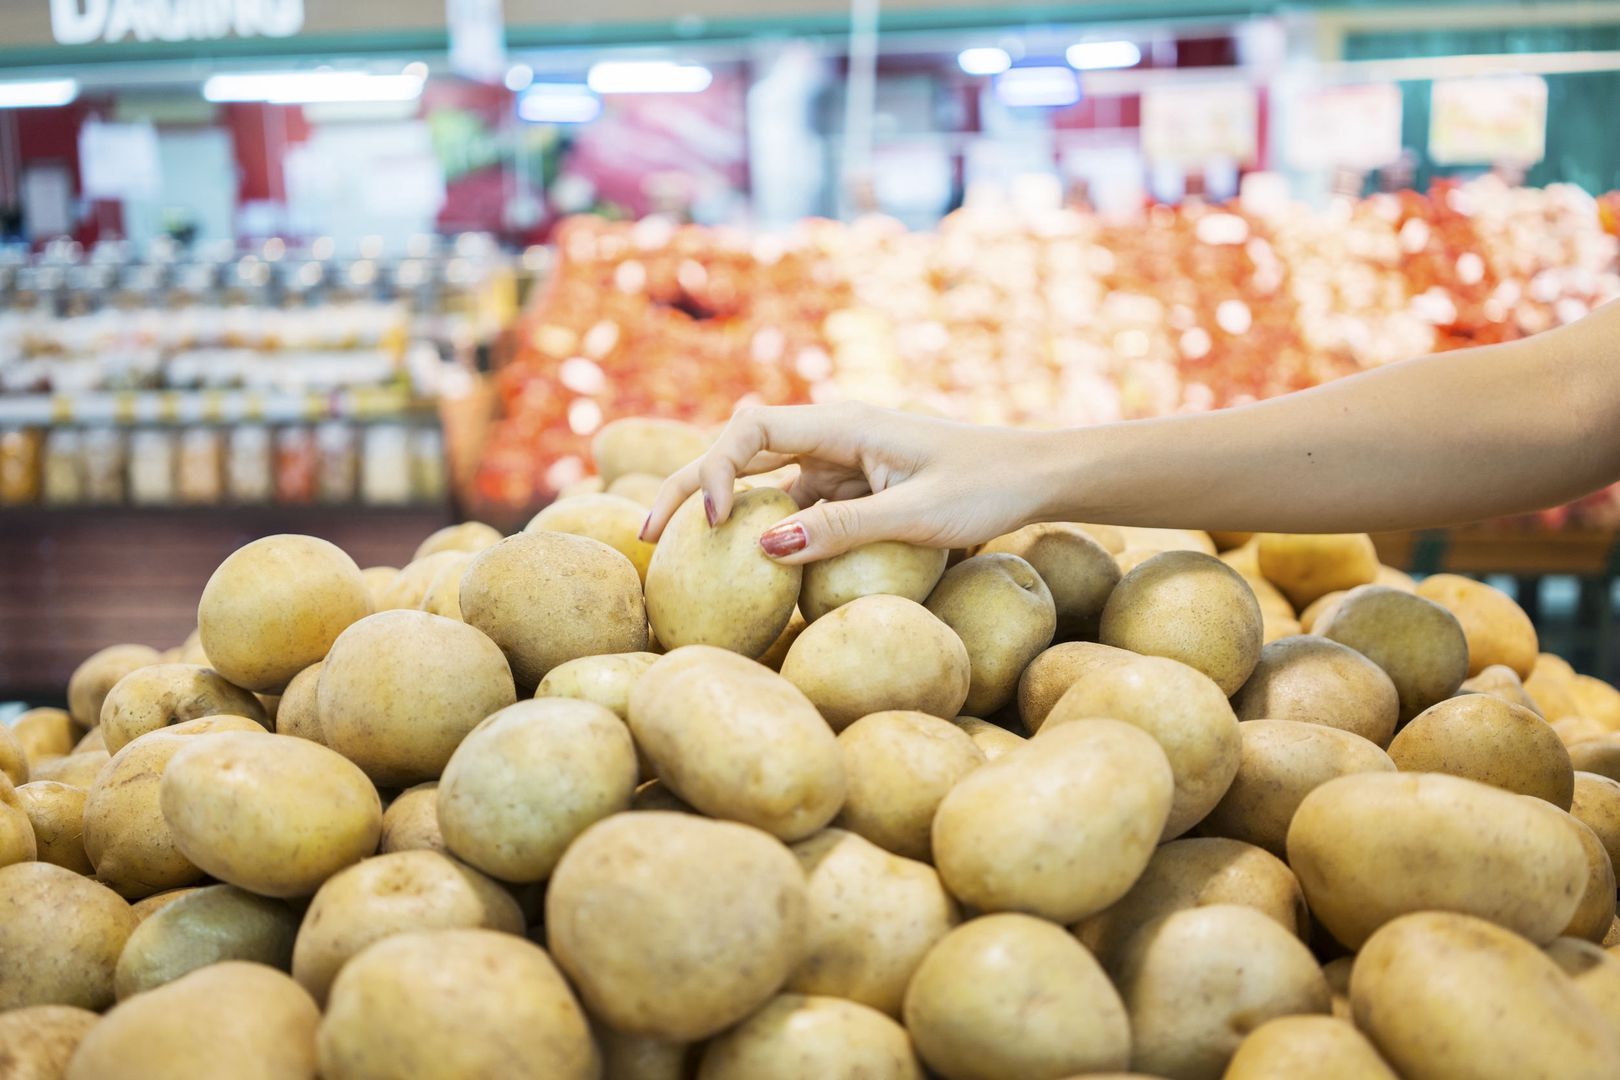 Jak przechowywać ziemniaki? Wielu z nas popełnia podstawowy błąd